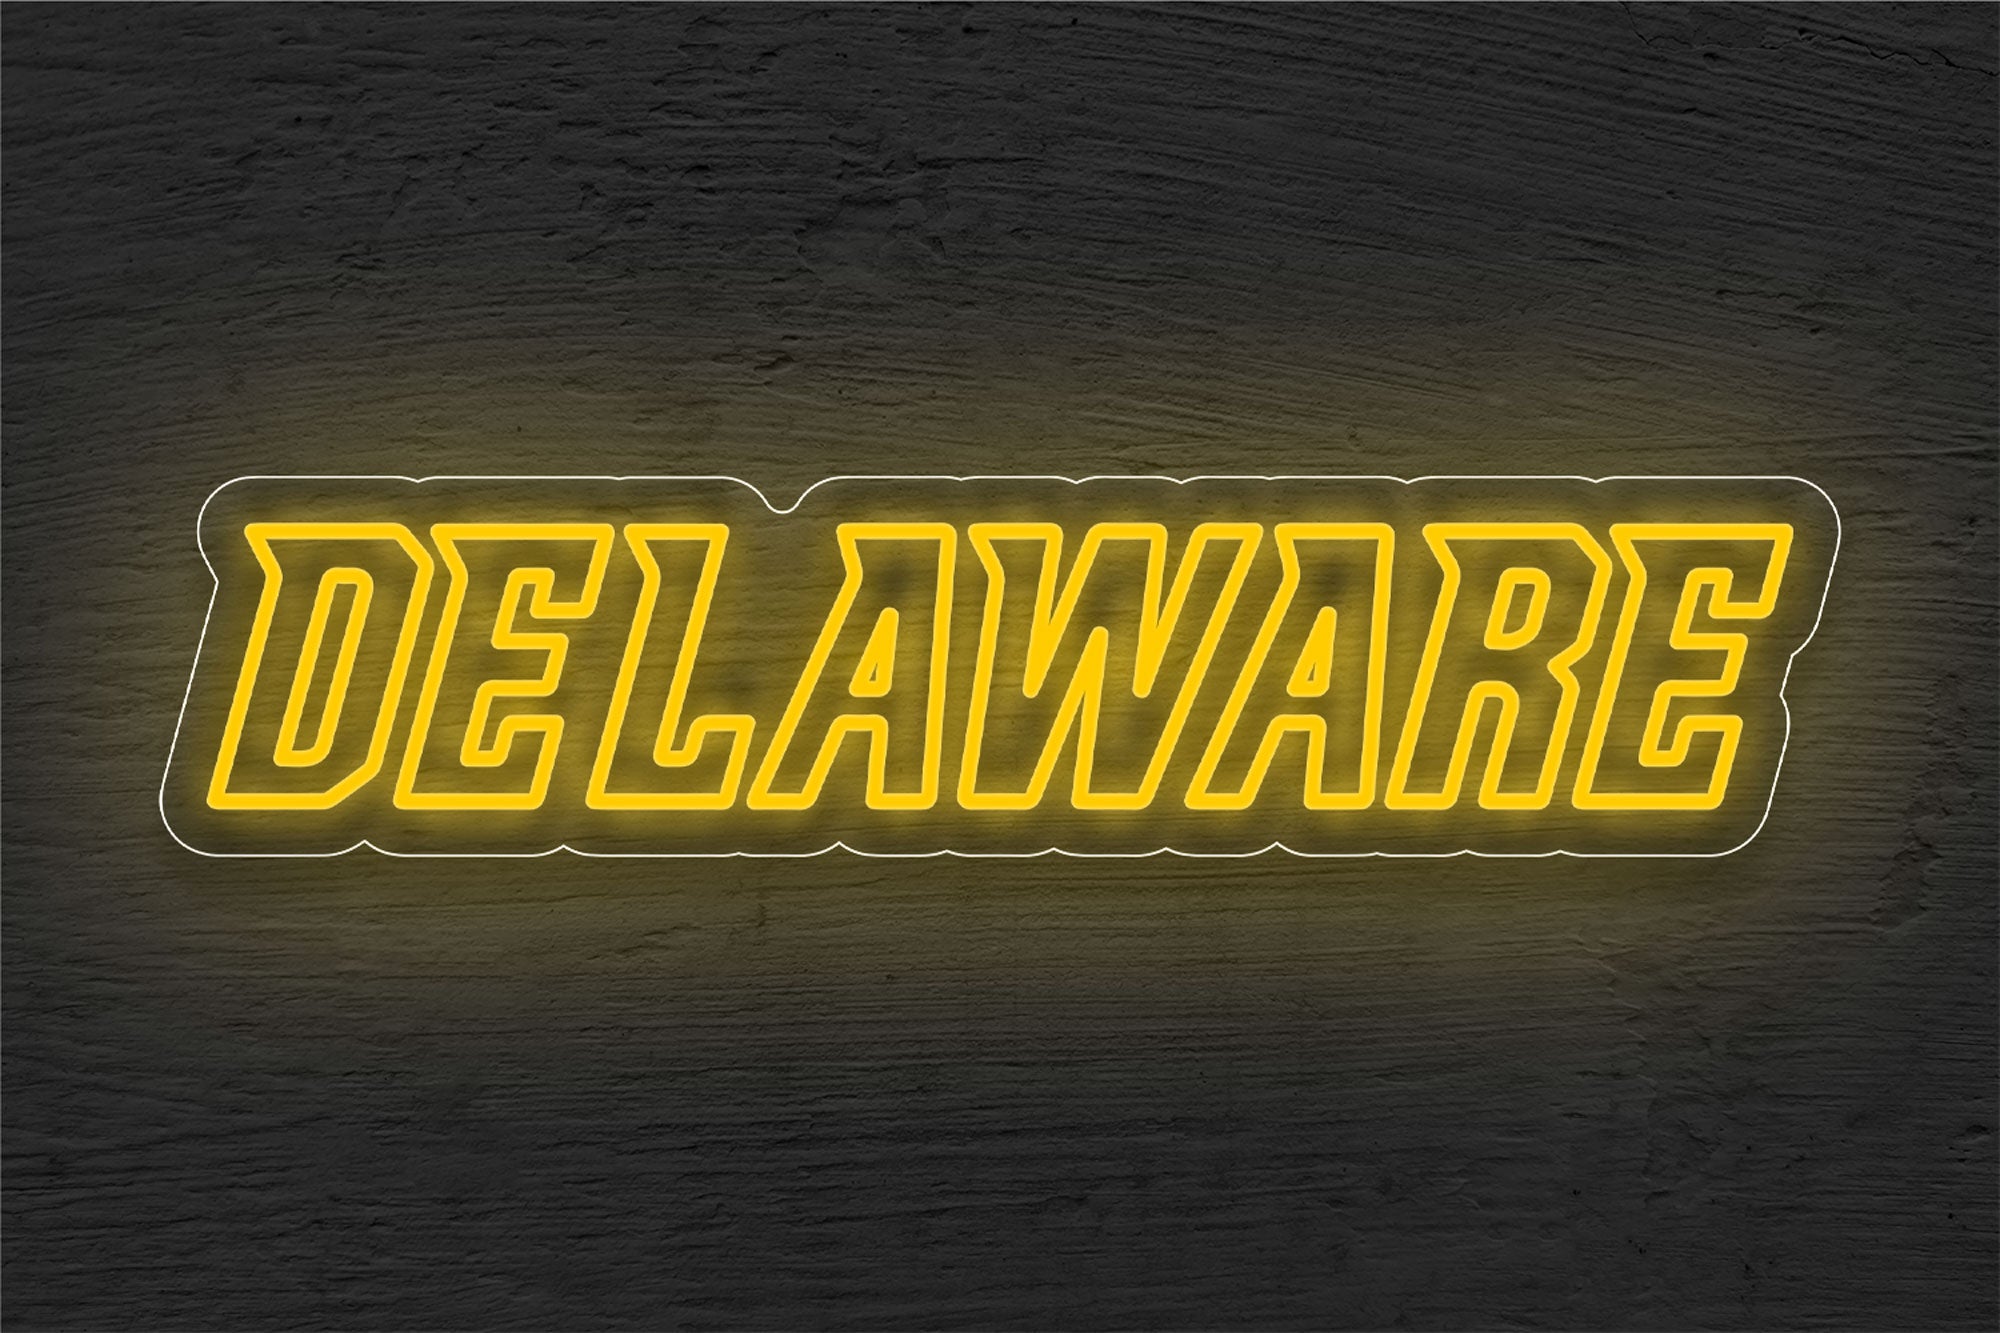 Delaware Fightin' Blue Hens Men's Basketball LED Neon Sign